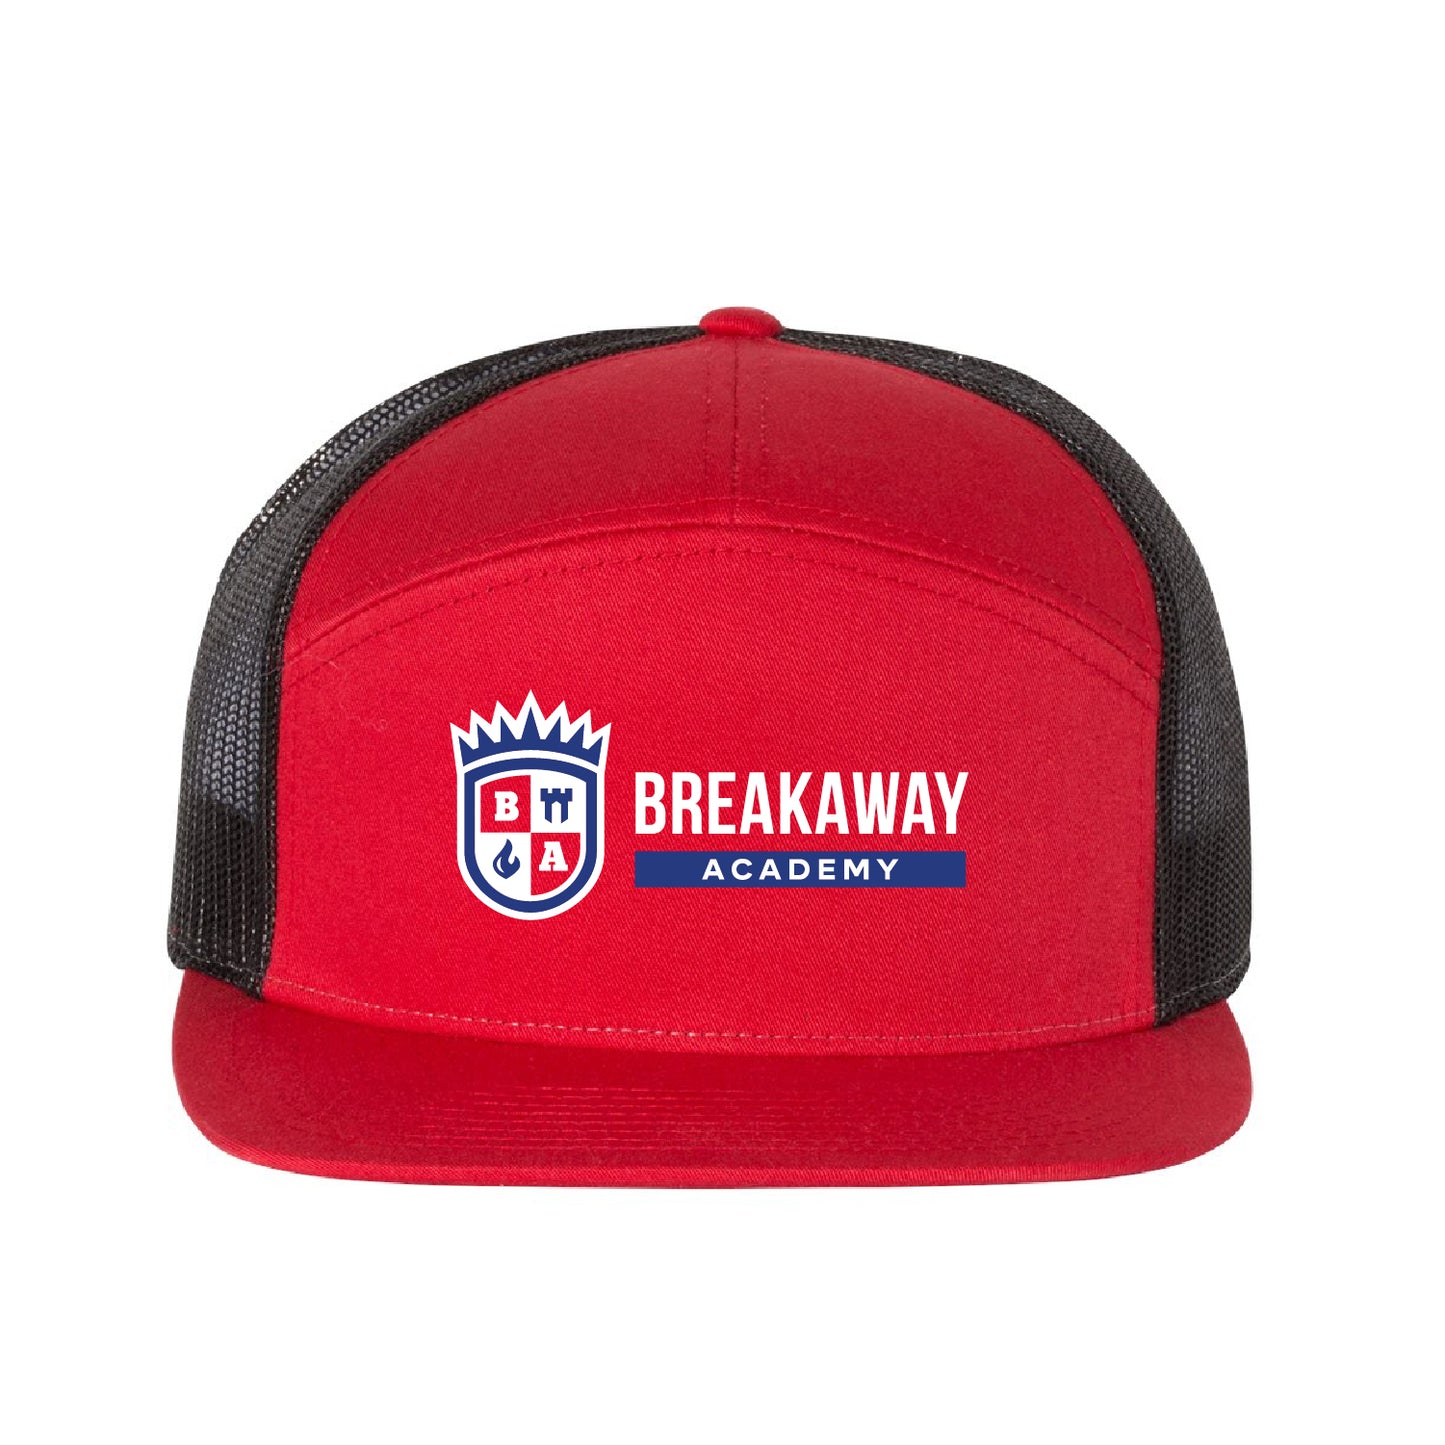 Breakaway Academy Seven-Panel Trucker Cap